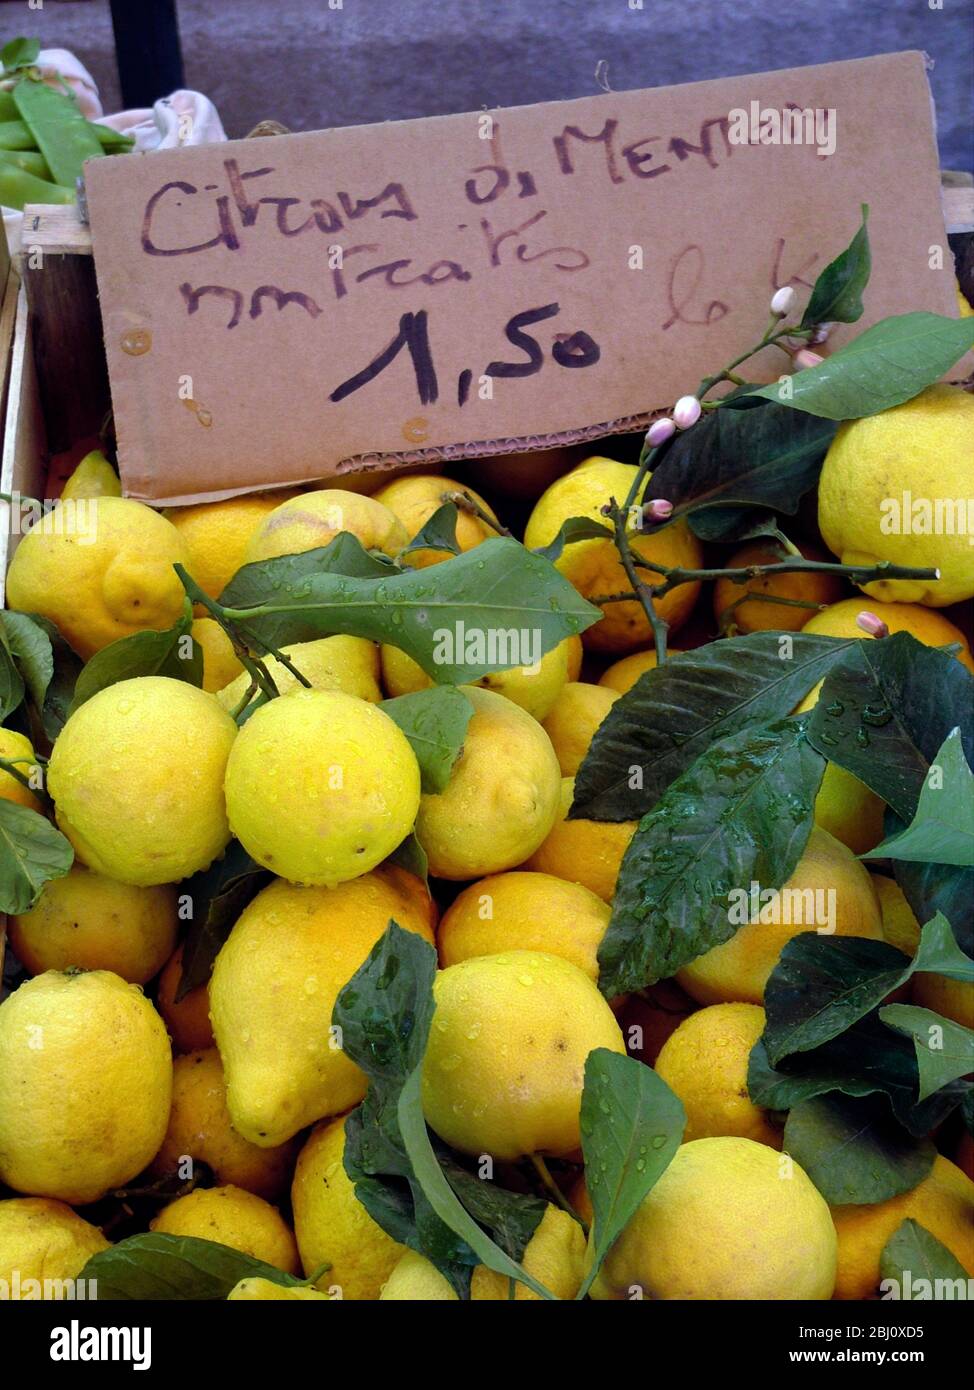 Stapel von Zitronen frisch vom Baum mit Blättern und Blüten zum Verkauf in der Markthalle in Menton, Südfrankreich - Stockfoto